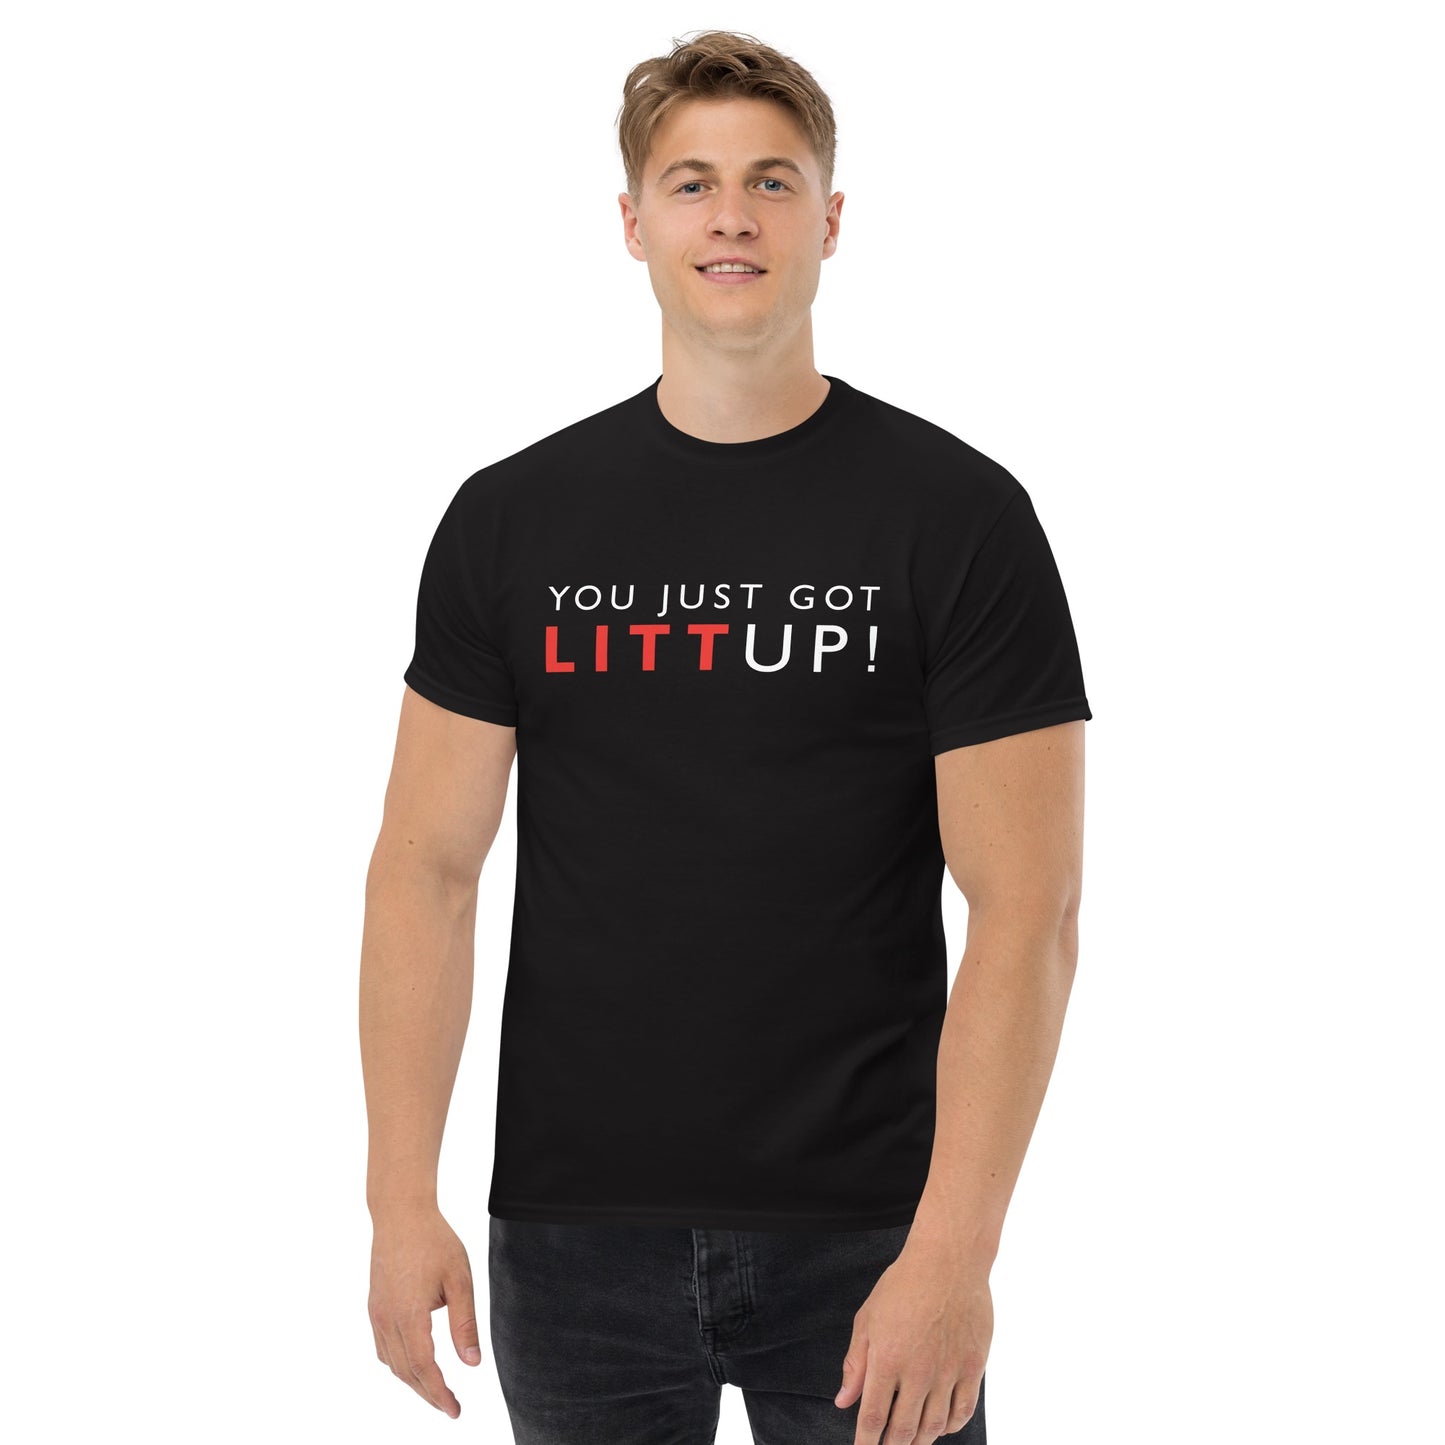 Suits Litt Up Unisex T- Shirt